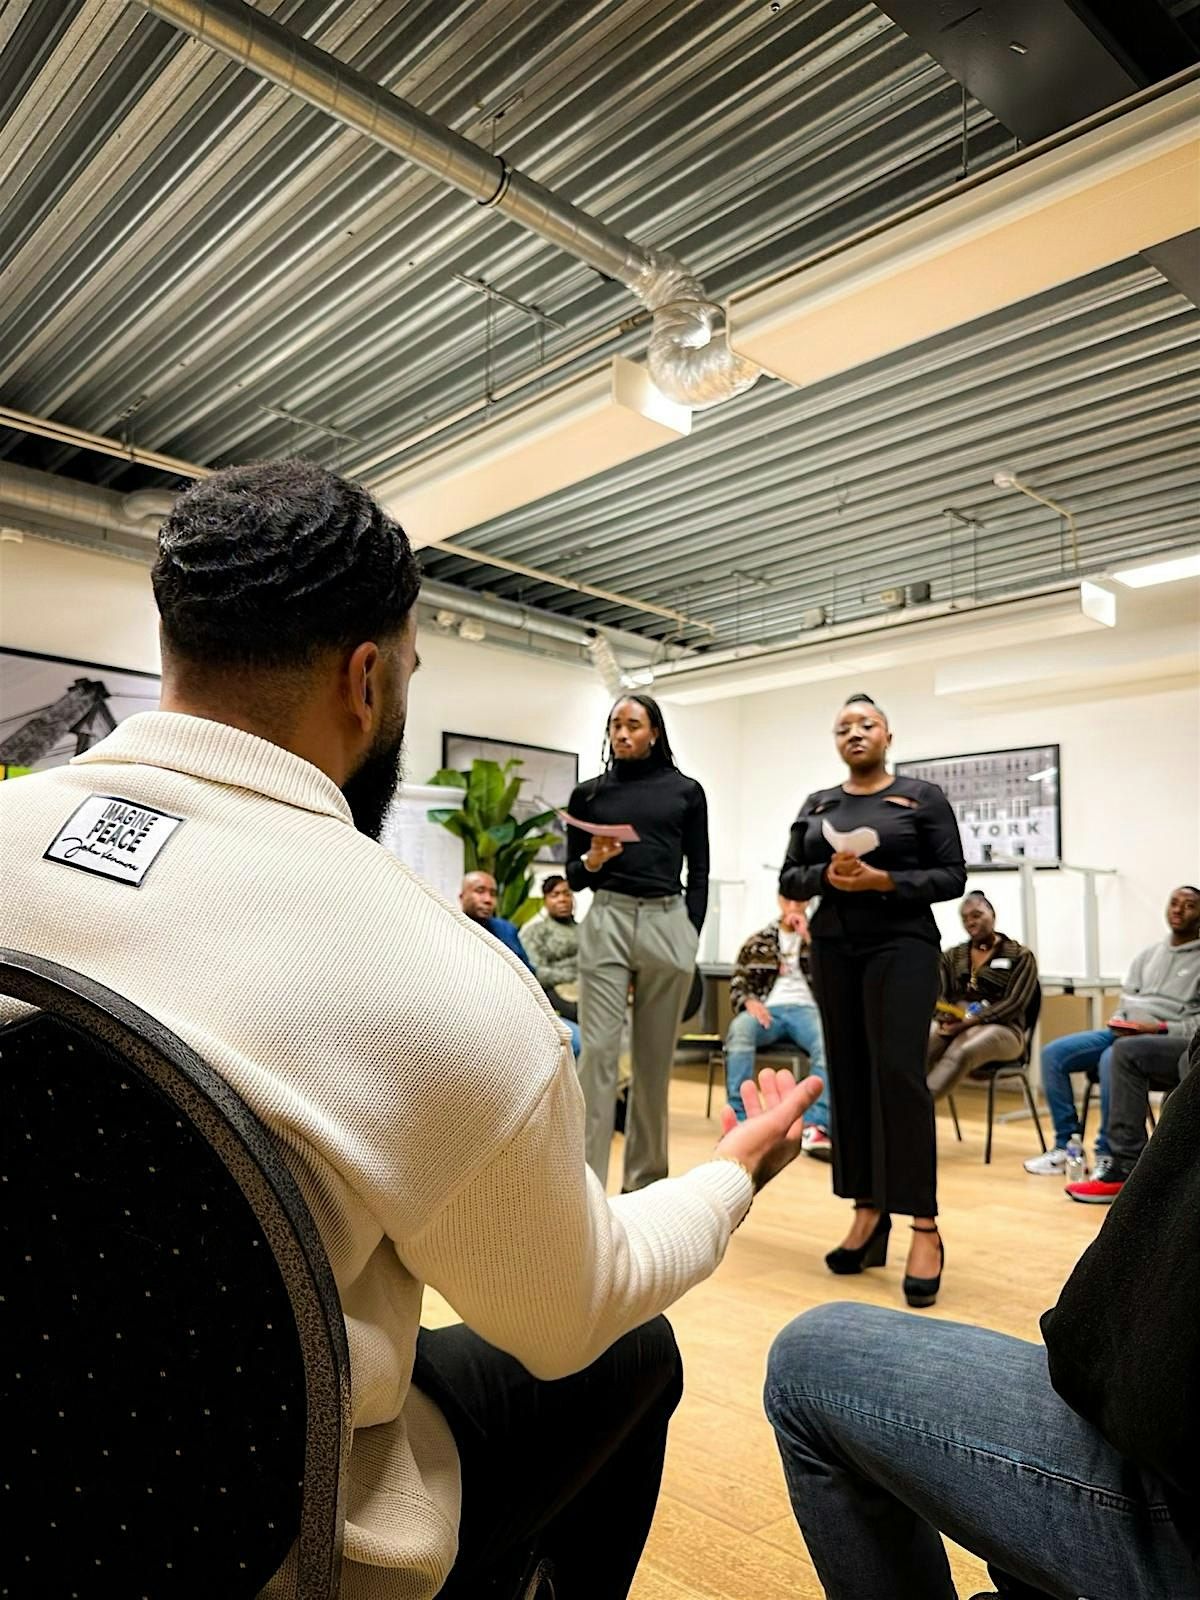 Mannenticket: Praatgroep - De relatie tussen de zwarte man en zwarte vrouw